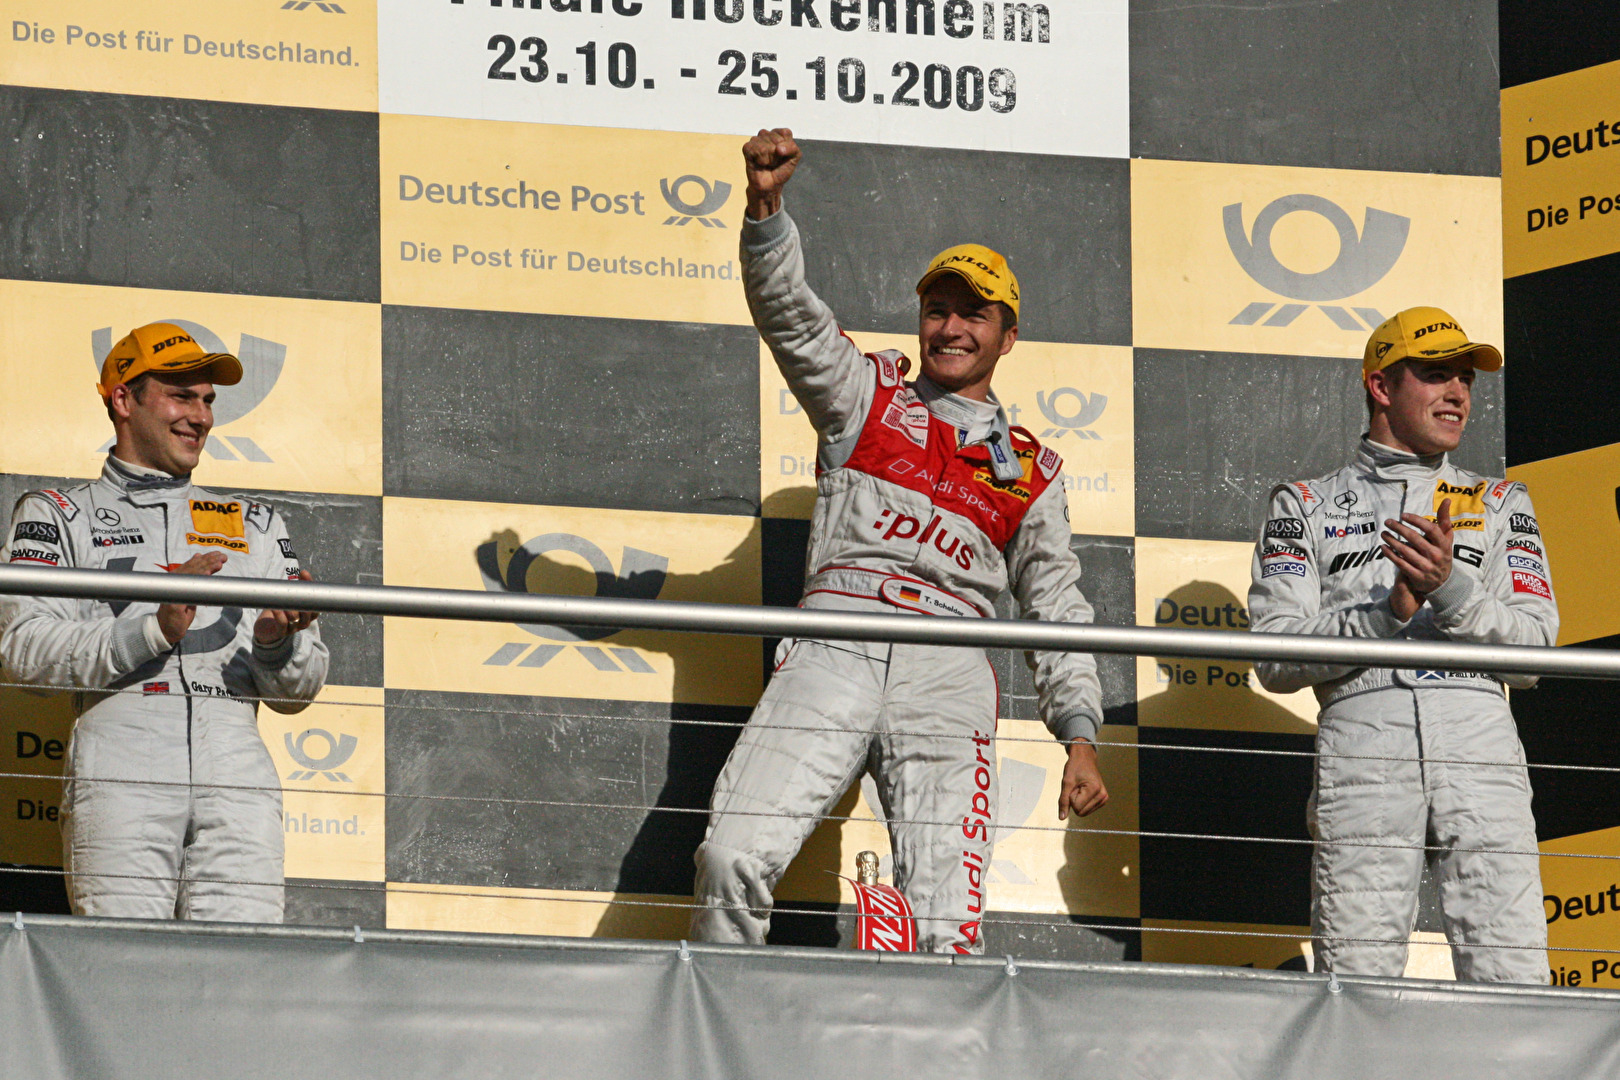 2009 Hockenheimring